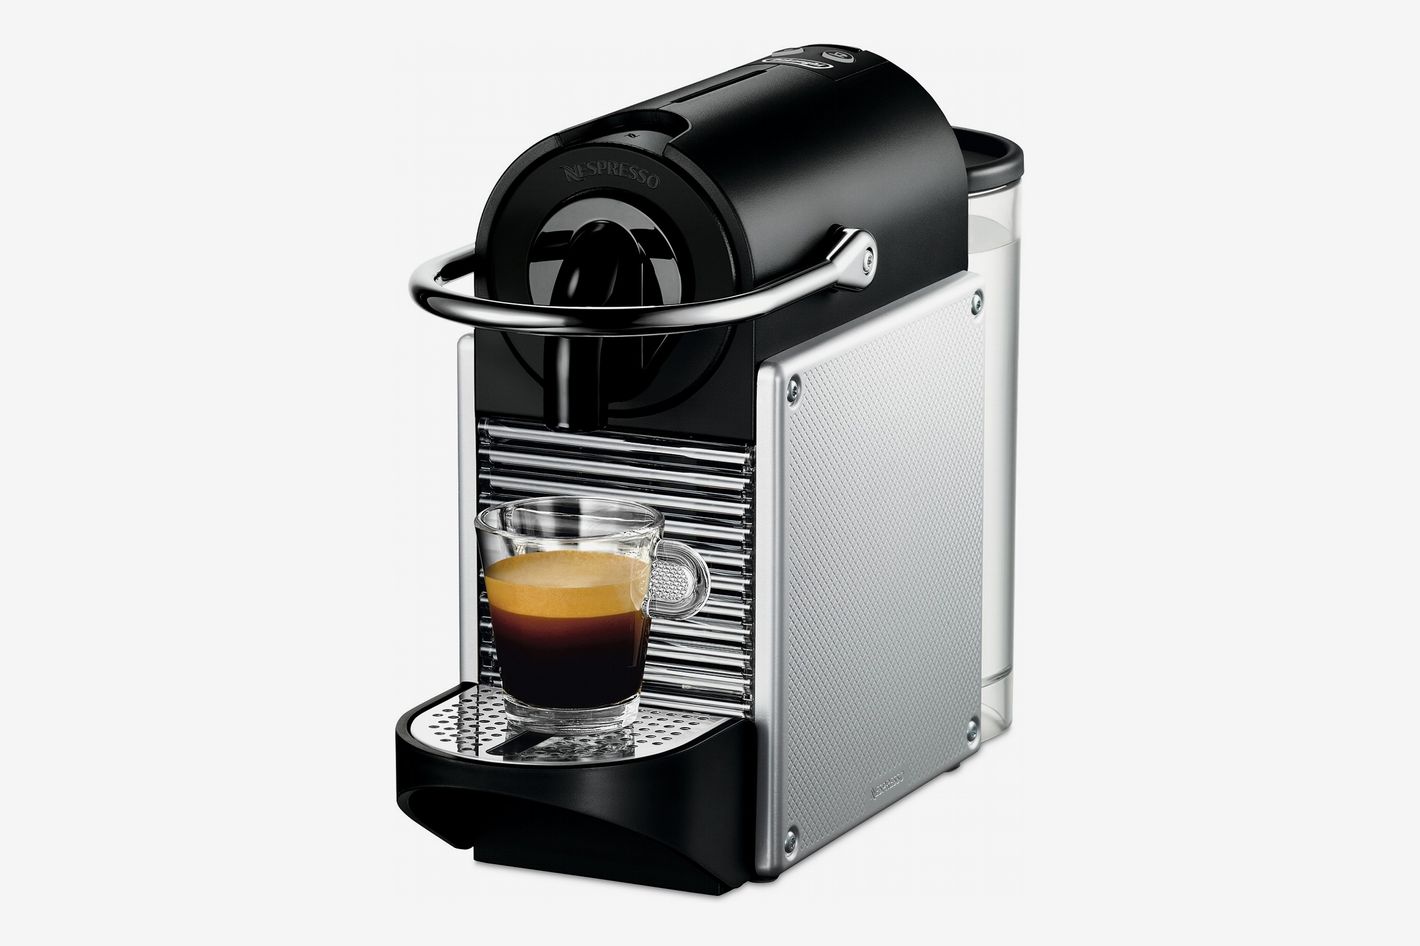 Monarch Waarschuwing oplichter Best Nespresso Machine Cyber Monday Kitchen Deals: 2018 | The Strategist